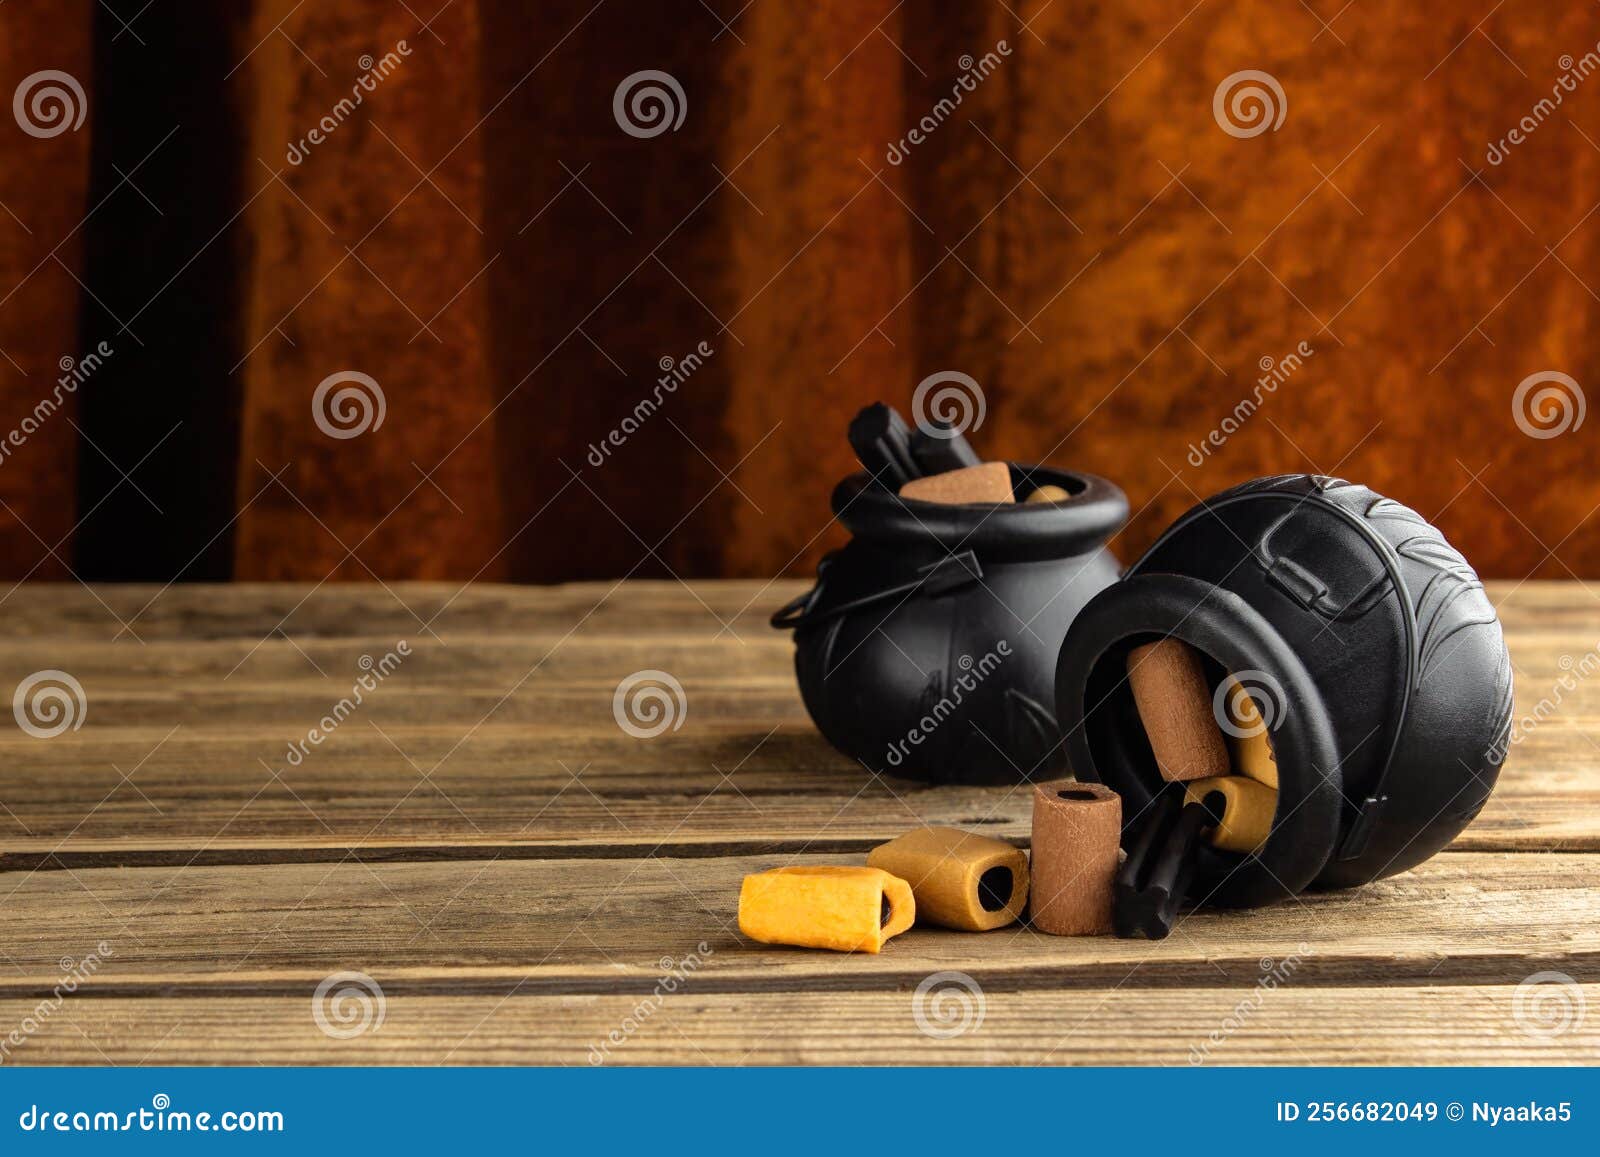 Deux Petits Chaudrons Avec Bonbons Sont Posés Sur Une Table En Bois Avec  Rideau De Velours Image stock - Image du noir, nourriture: 256682049